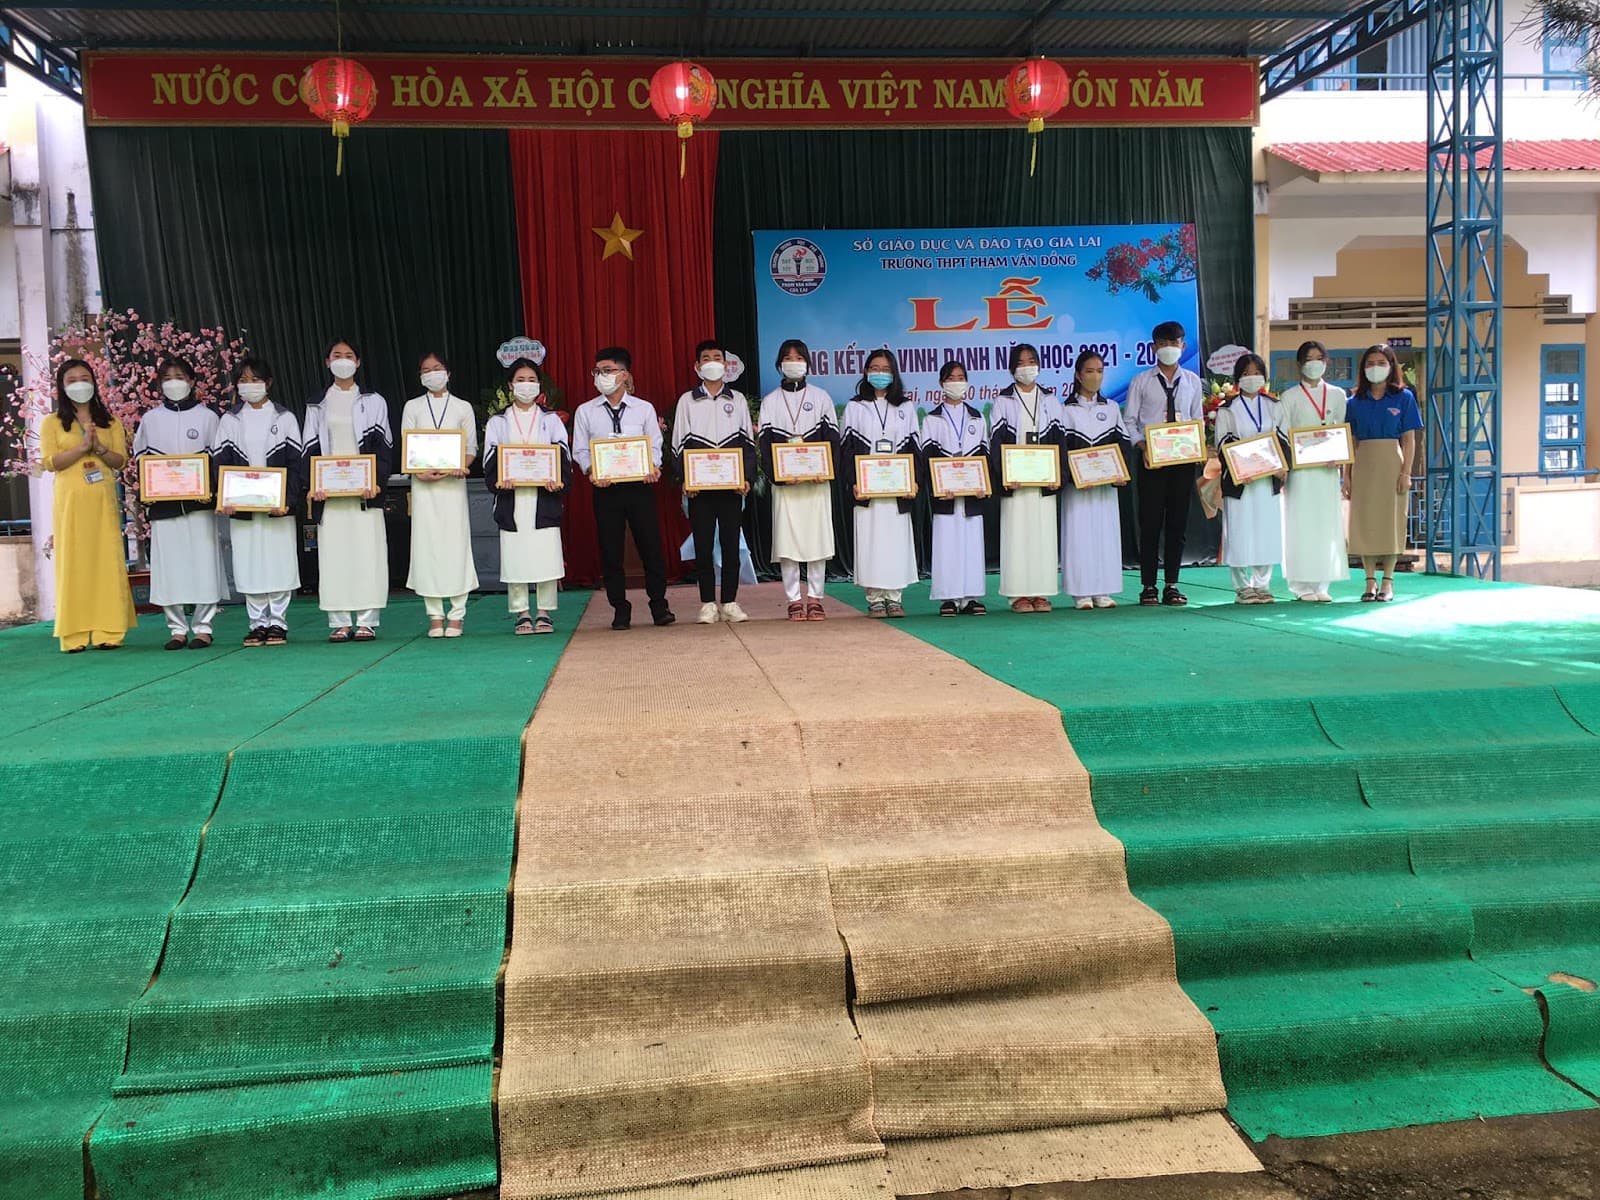 Đánh Giá Trường THPT Phạm Văn Đồng- Gia Lai Có Tốt Không